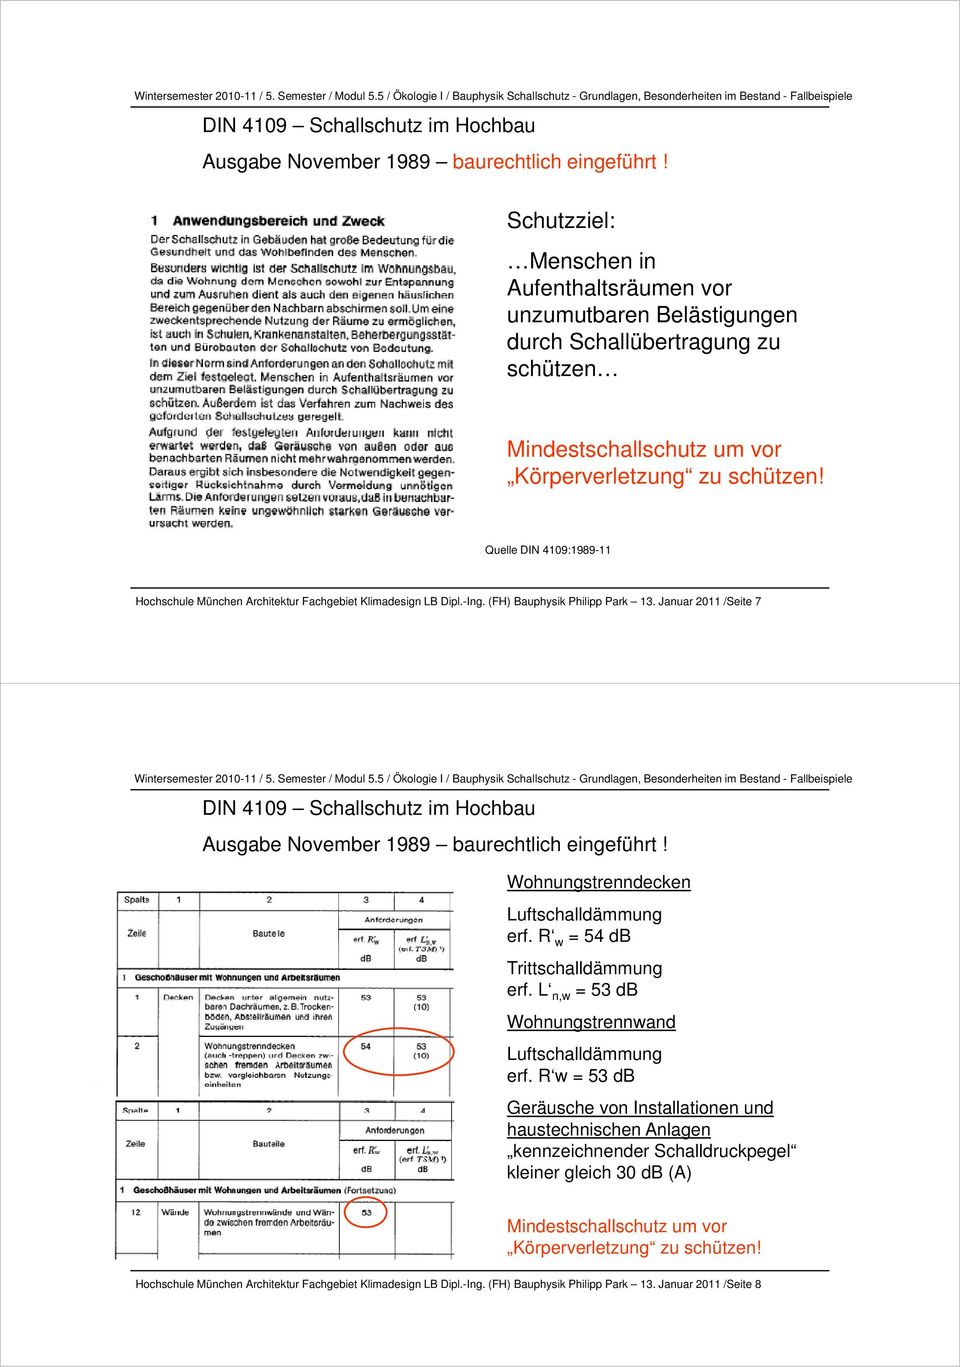 Quelle DIN 4109:1989-11 Hochschule München Architektur Fachgebiet Klimadesign LB Dipl.-Ing. (FH) Bauphysik Philipp Park 13. Januar 2011 /Seite 7  Wohnungstrenndecken Luftschalldämmung erf.